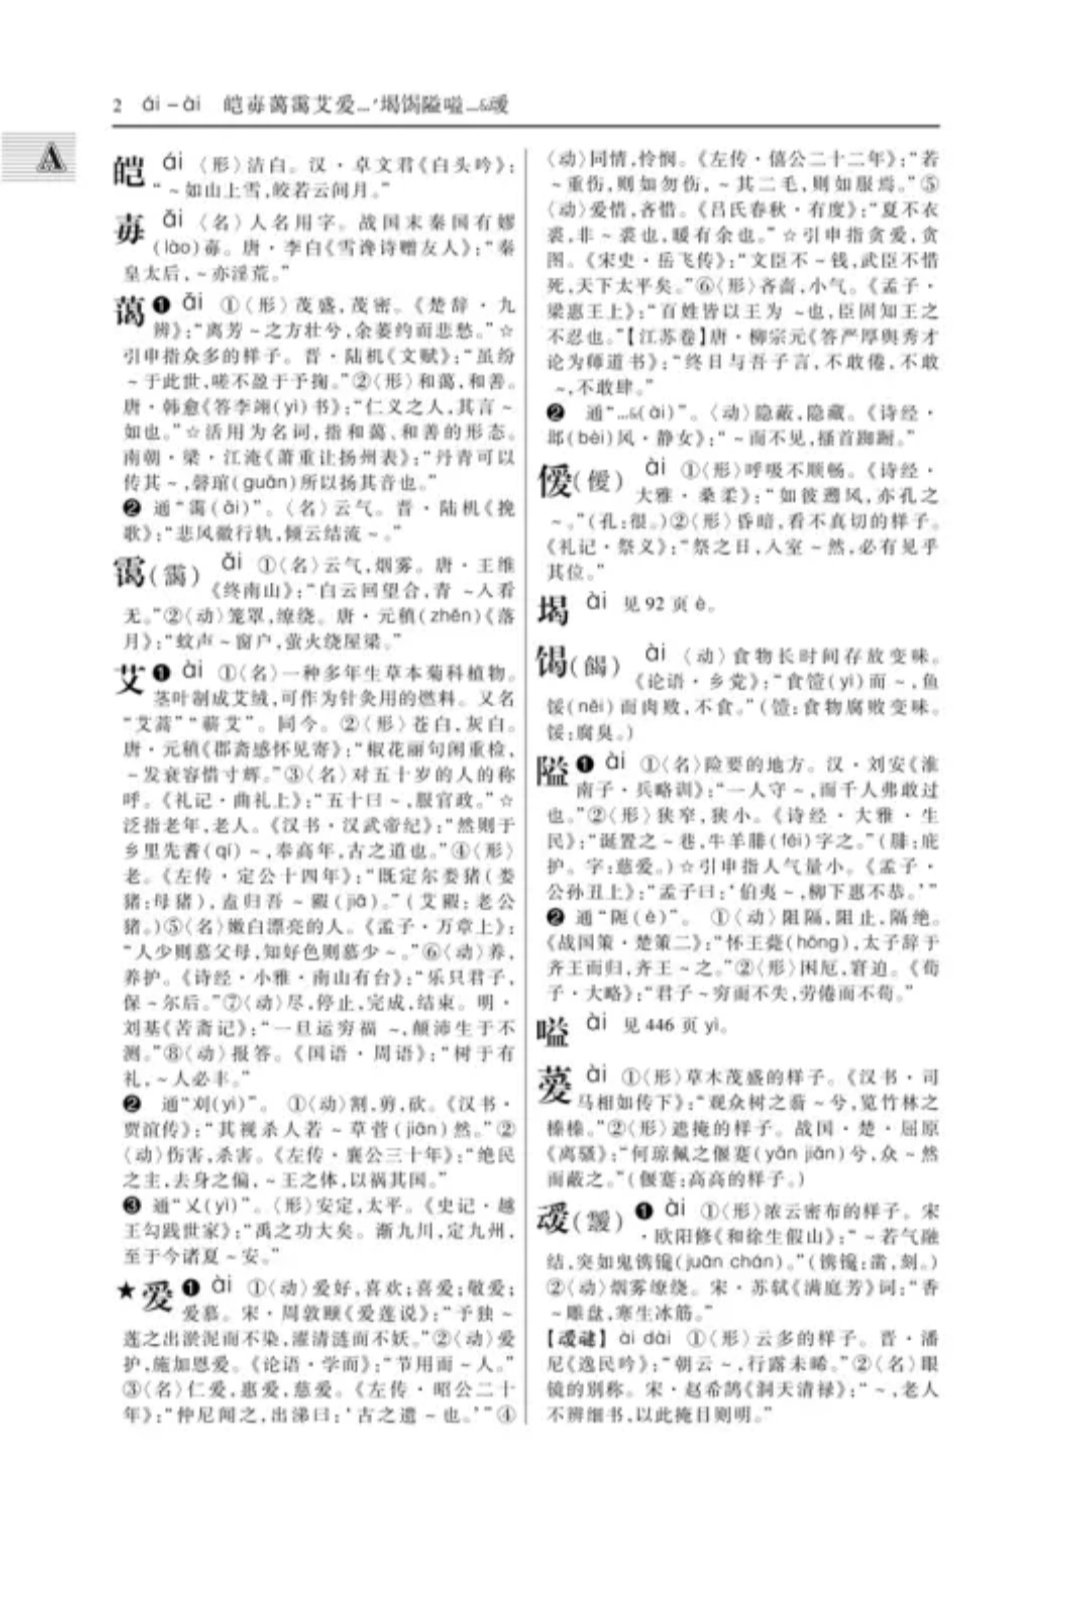 字典是老师推荐的，有利于学生提高古汉语水平